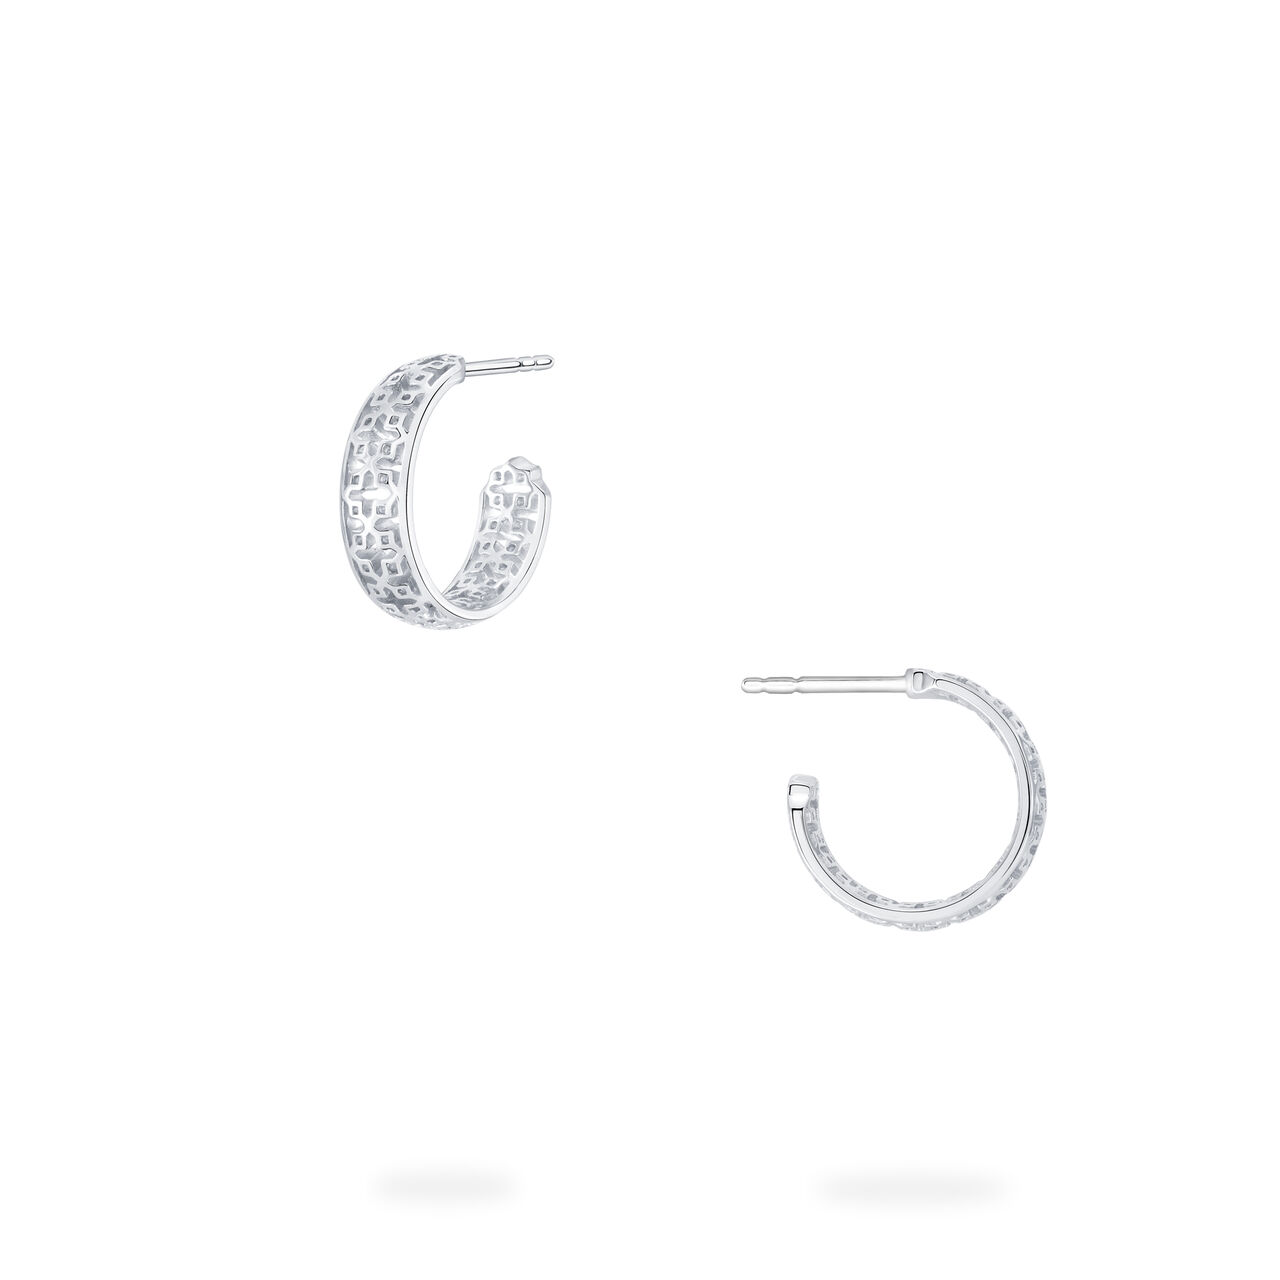 Birks Muse  15 MM Sterling Silver Hoop Earrings 450008635139